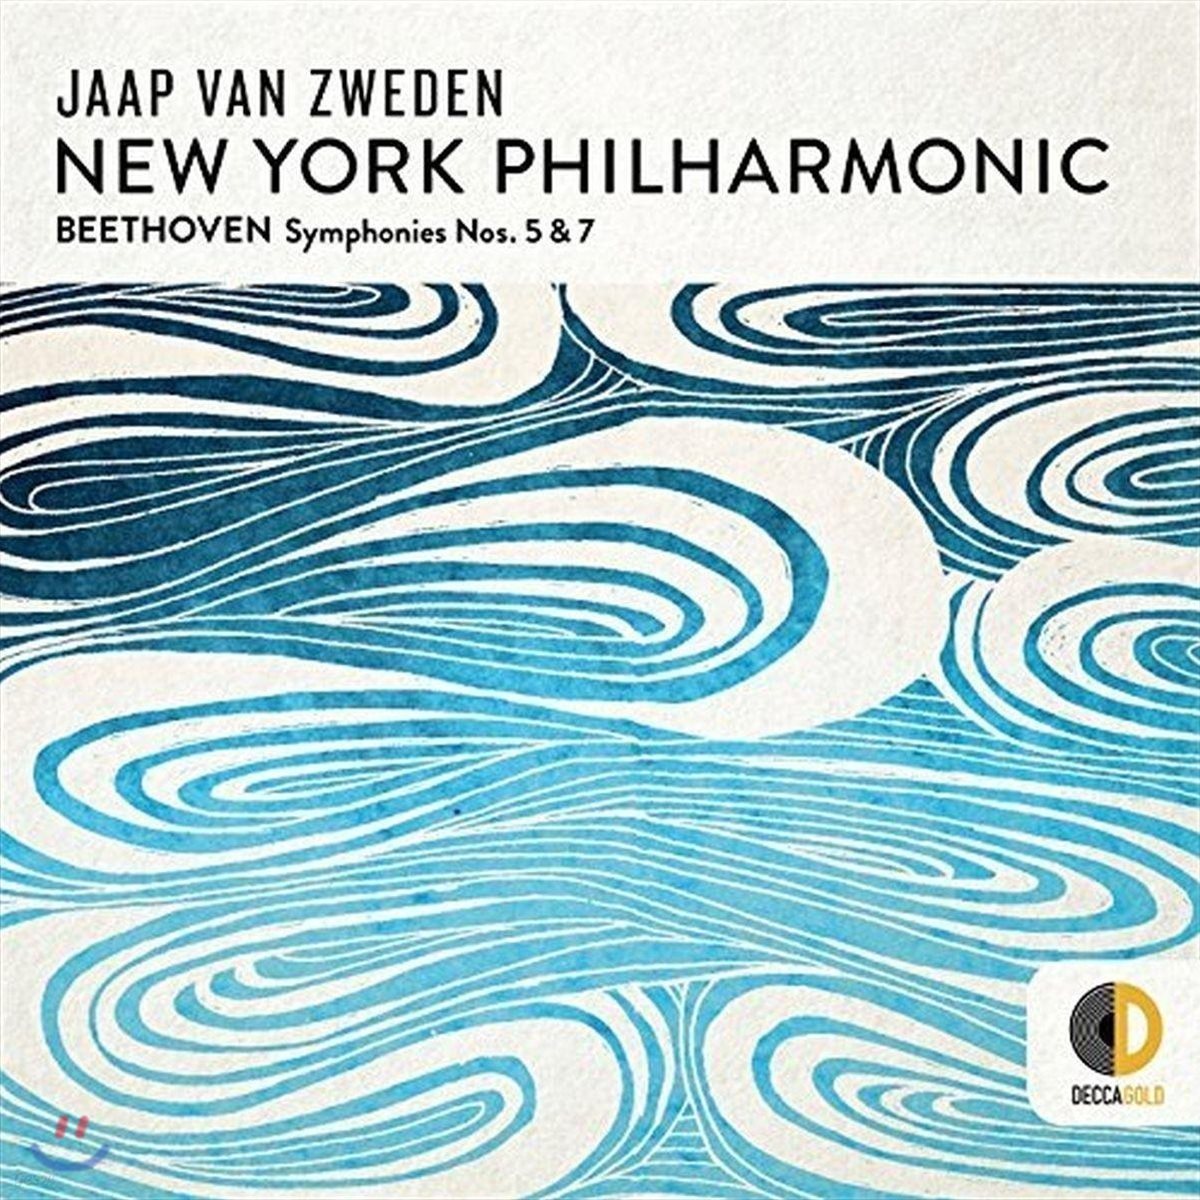 Jaap van Zweden 베토벤: 교향곡 5 & 7번 (Beethoven: Symphonies Nos. 5 & 7)